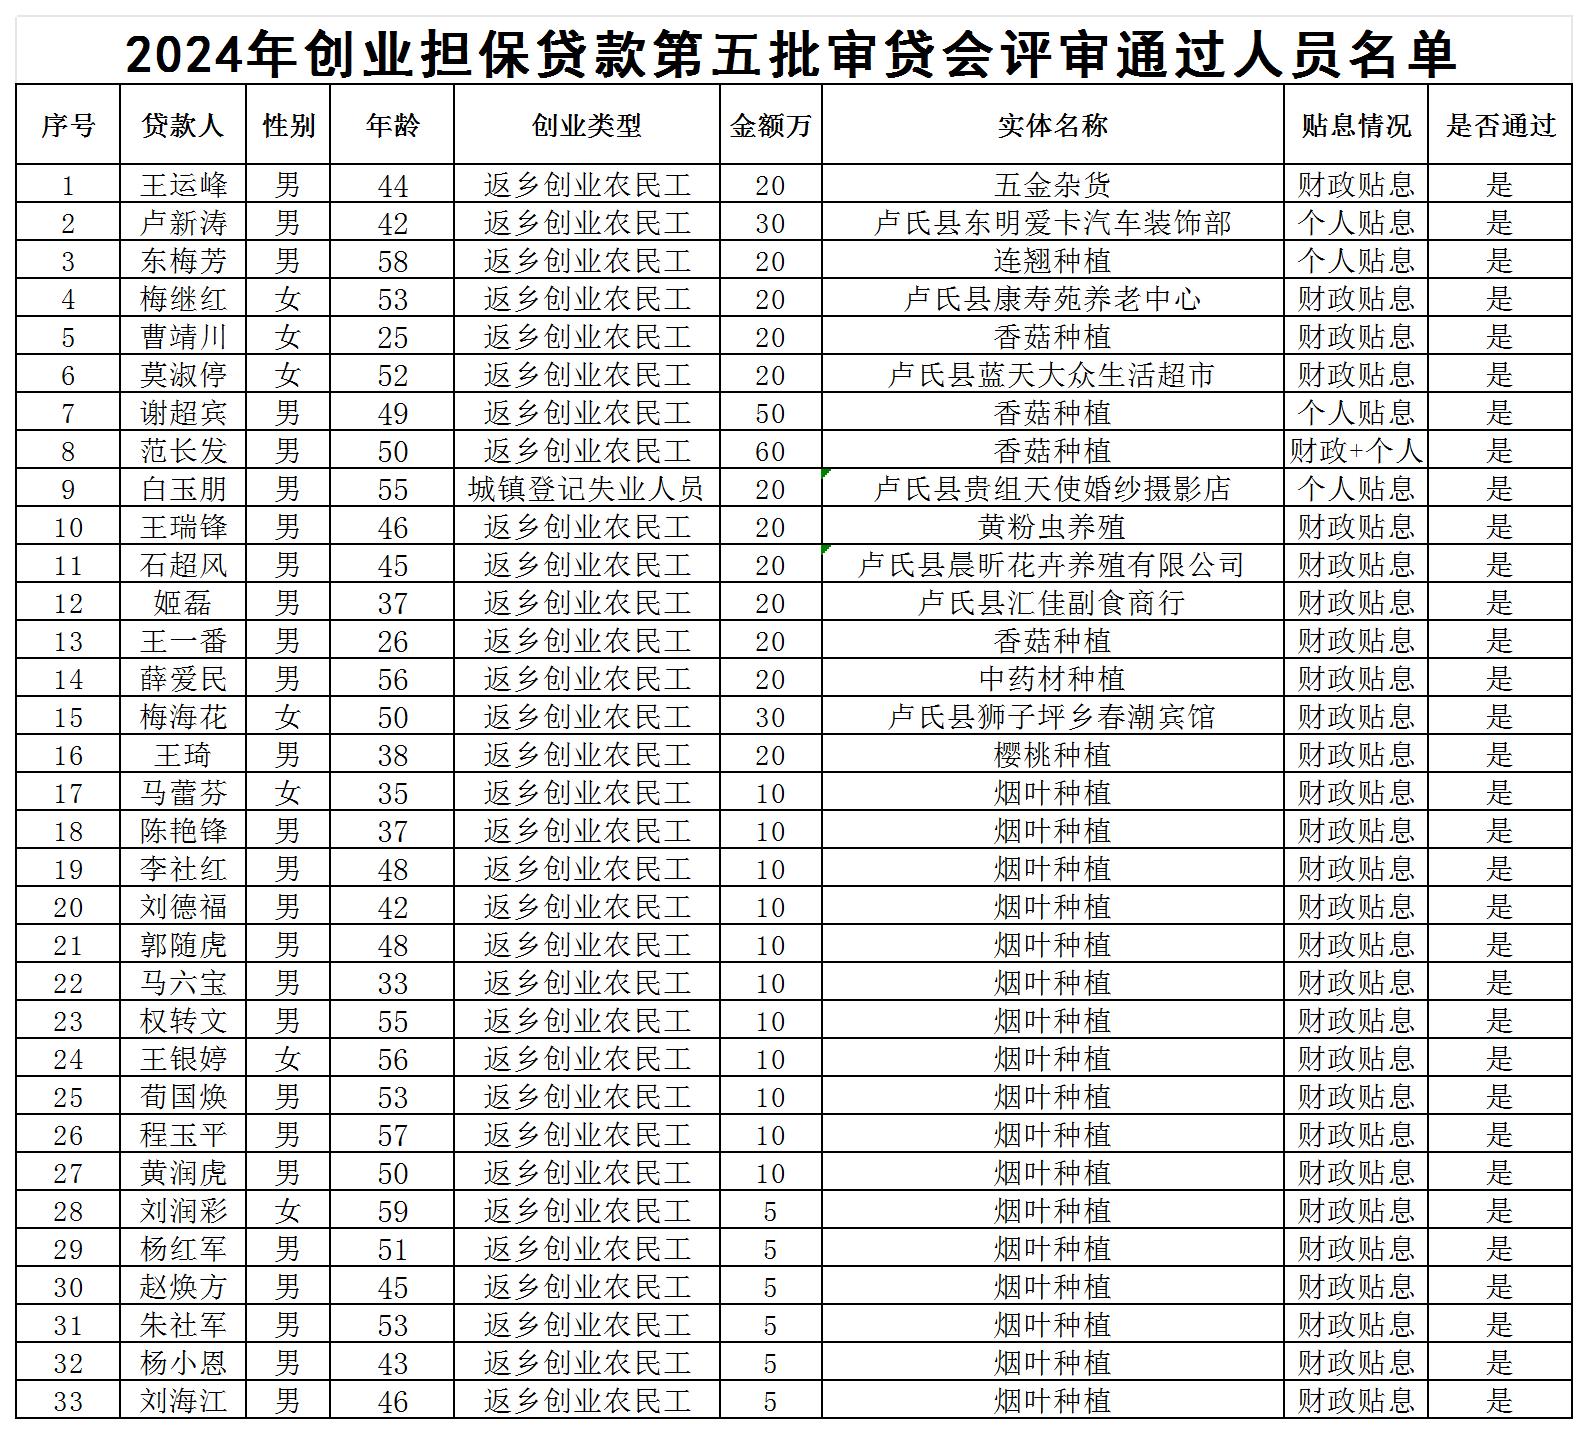 202405审贷会通过名单公示 XLS 工作表_Sheet1.jpg